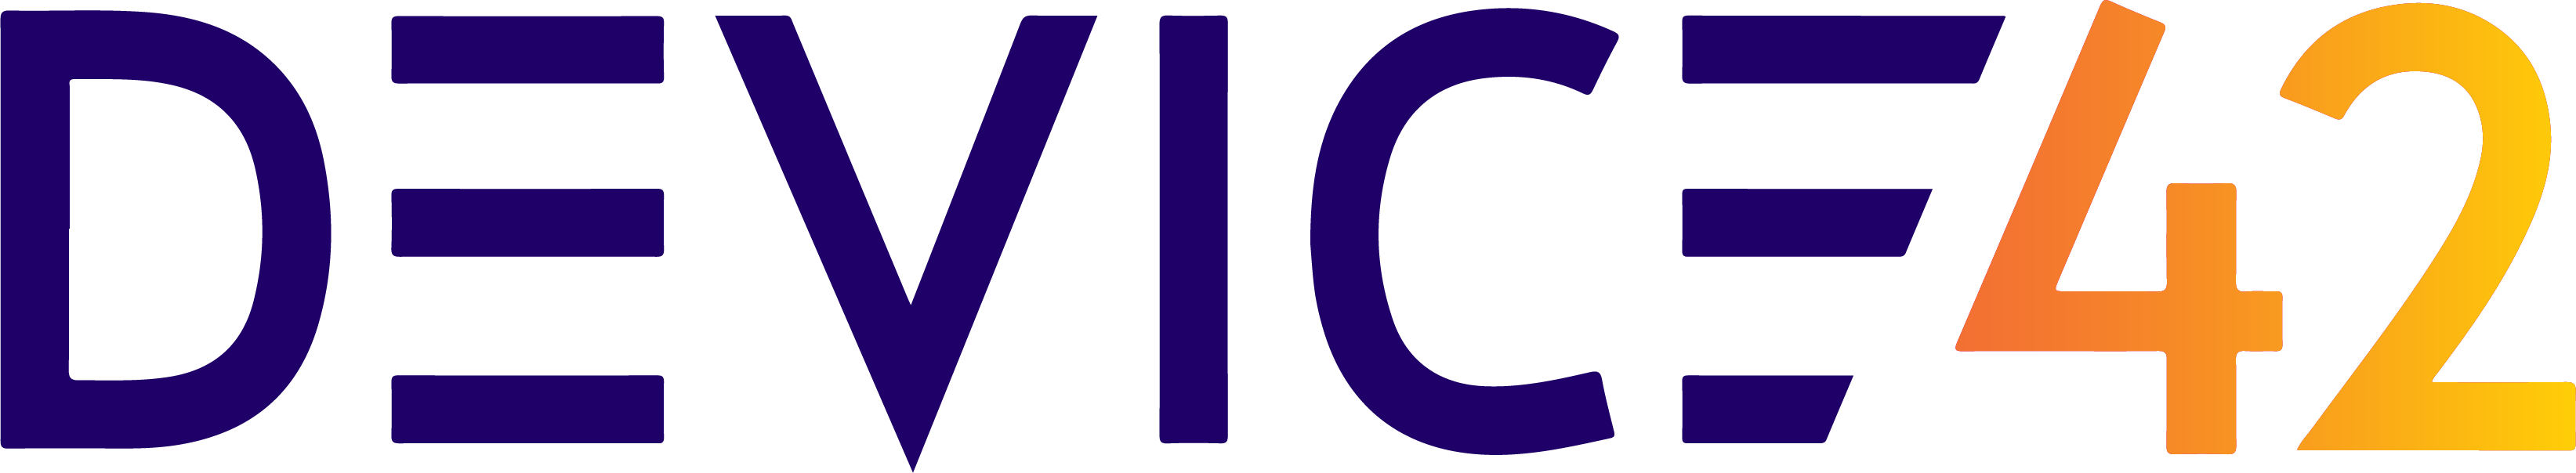 Logo Device 42 infraestructuras IT